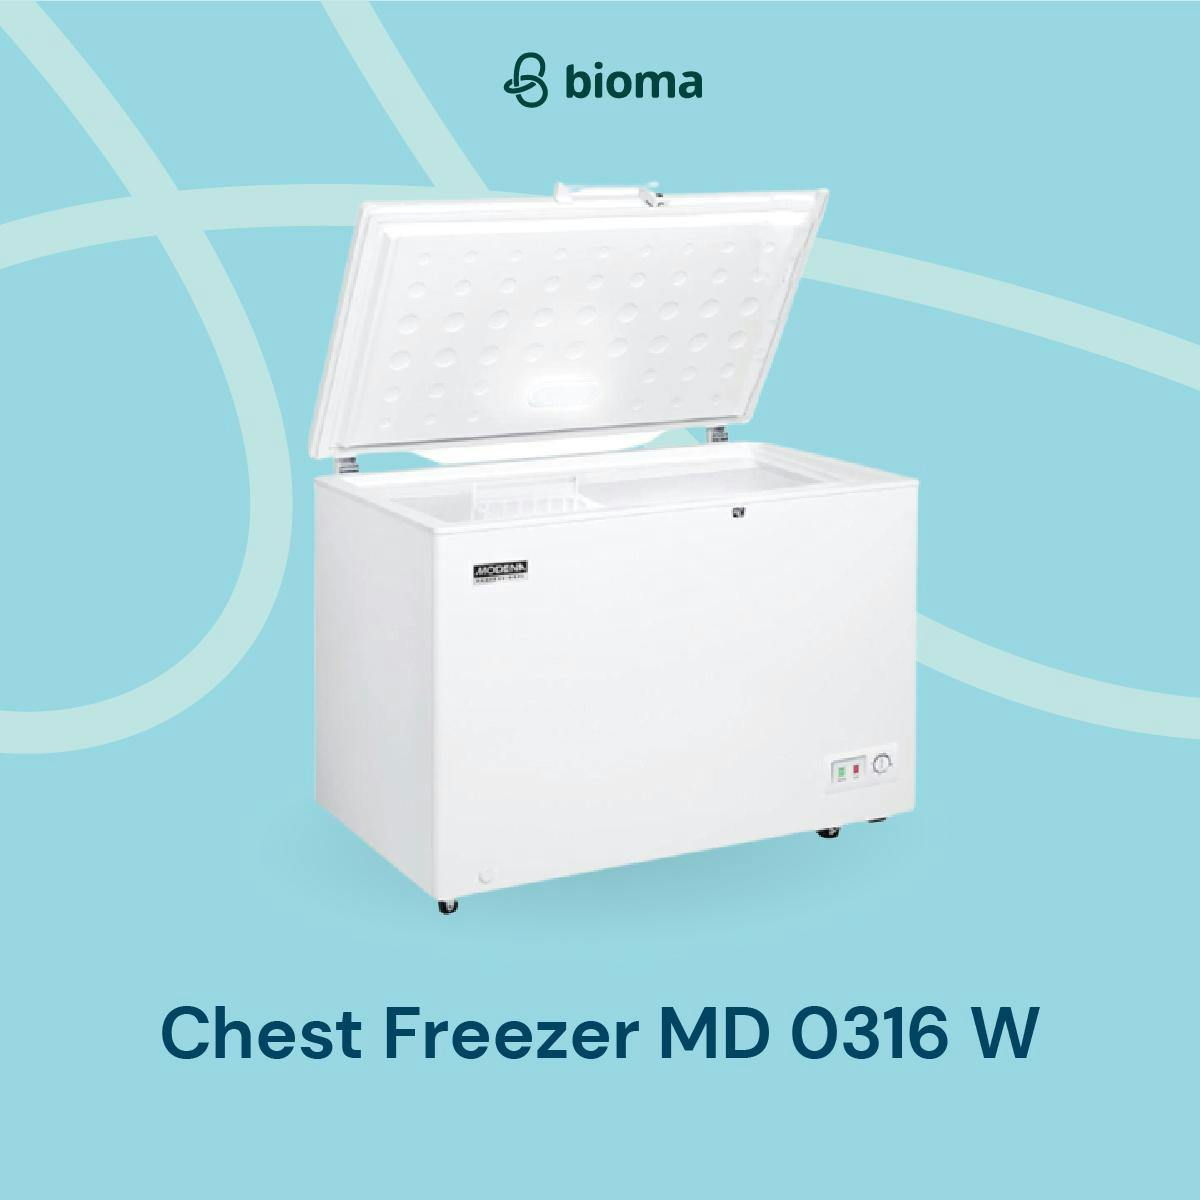 Chest Freezer MD 0316 W